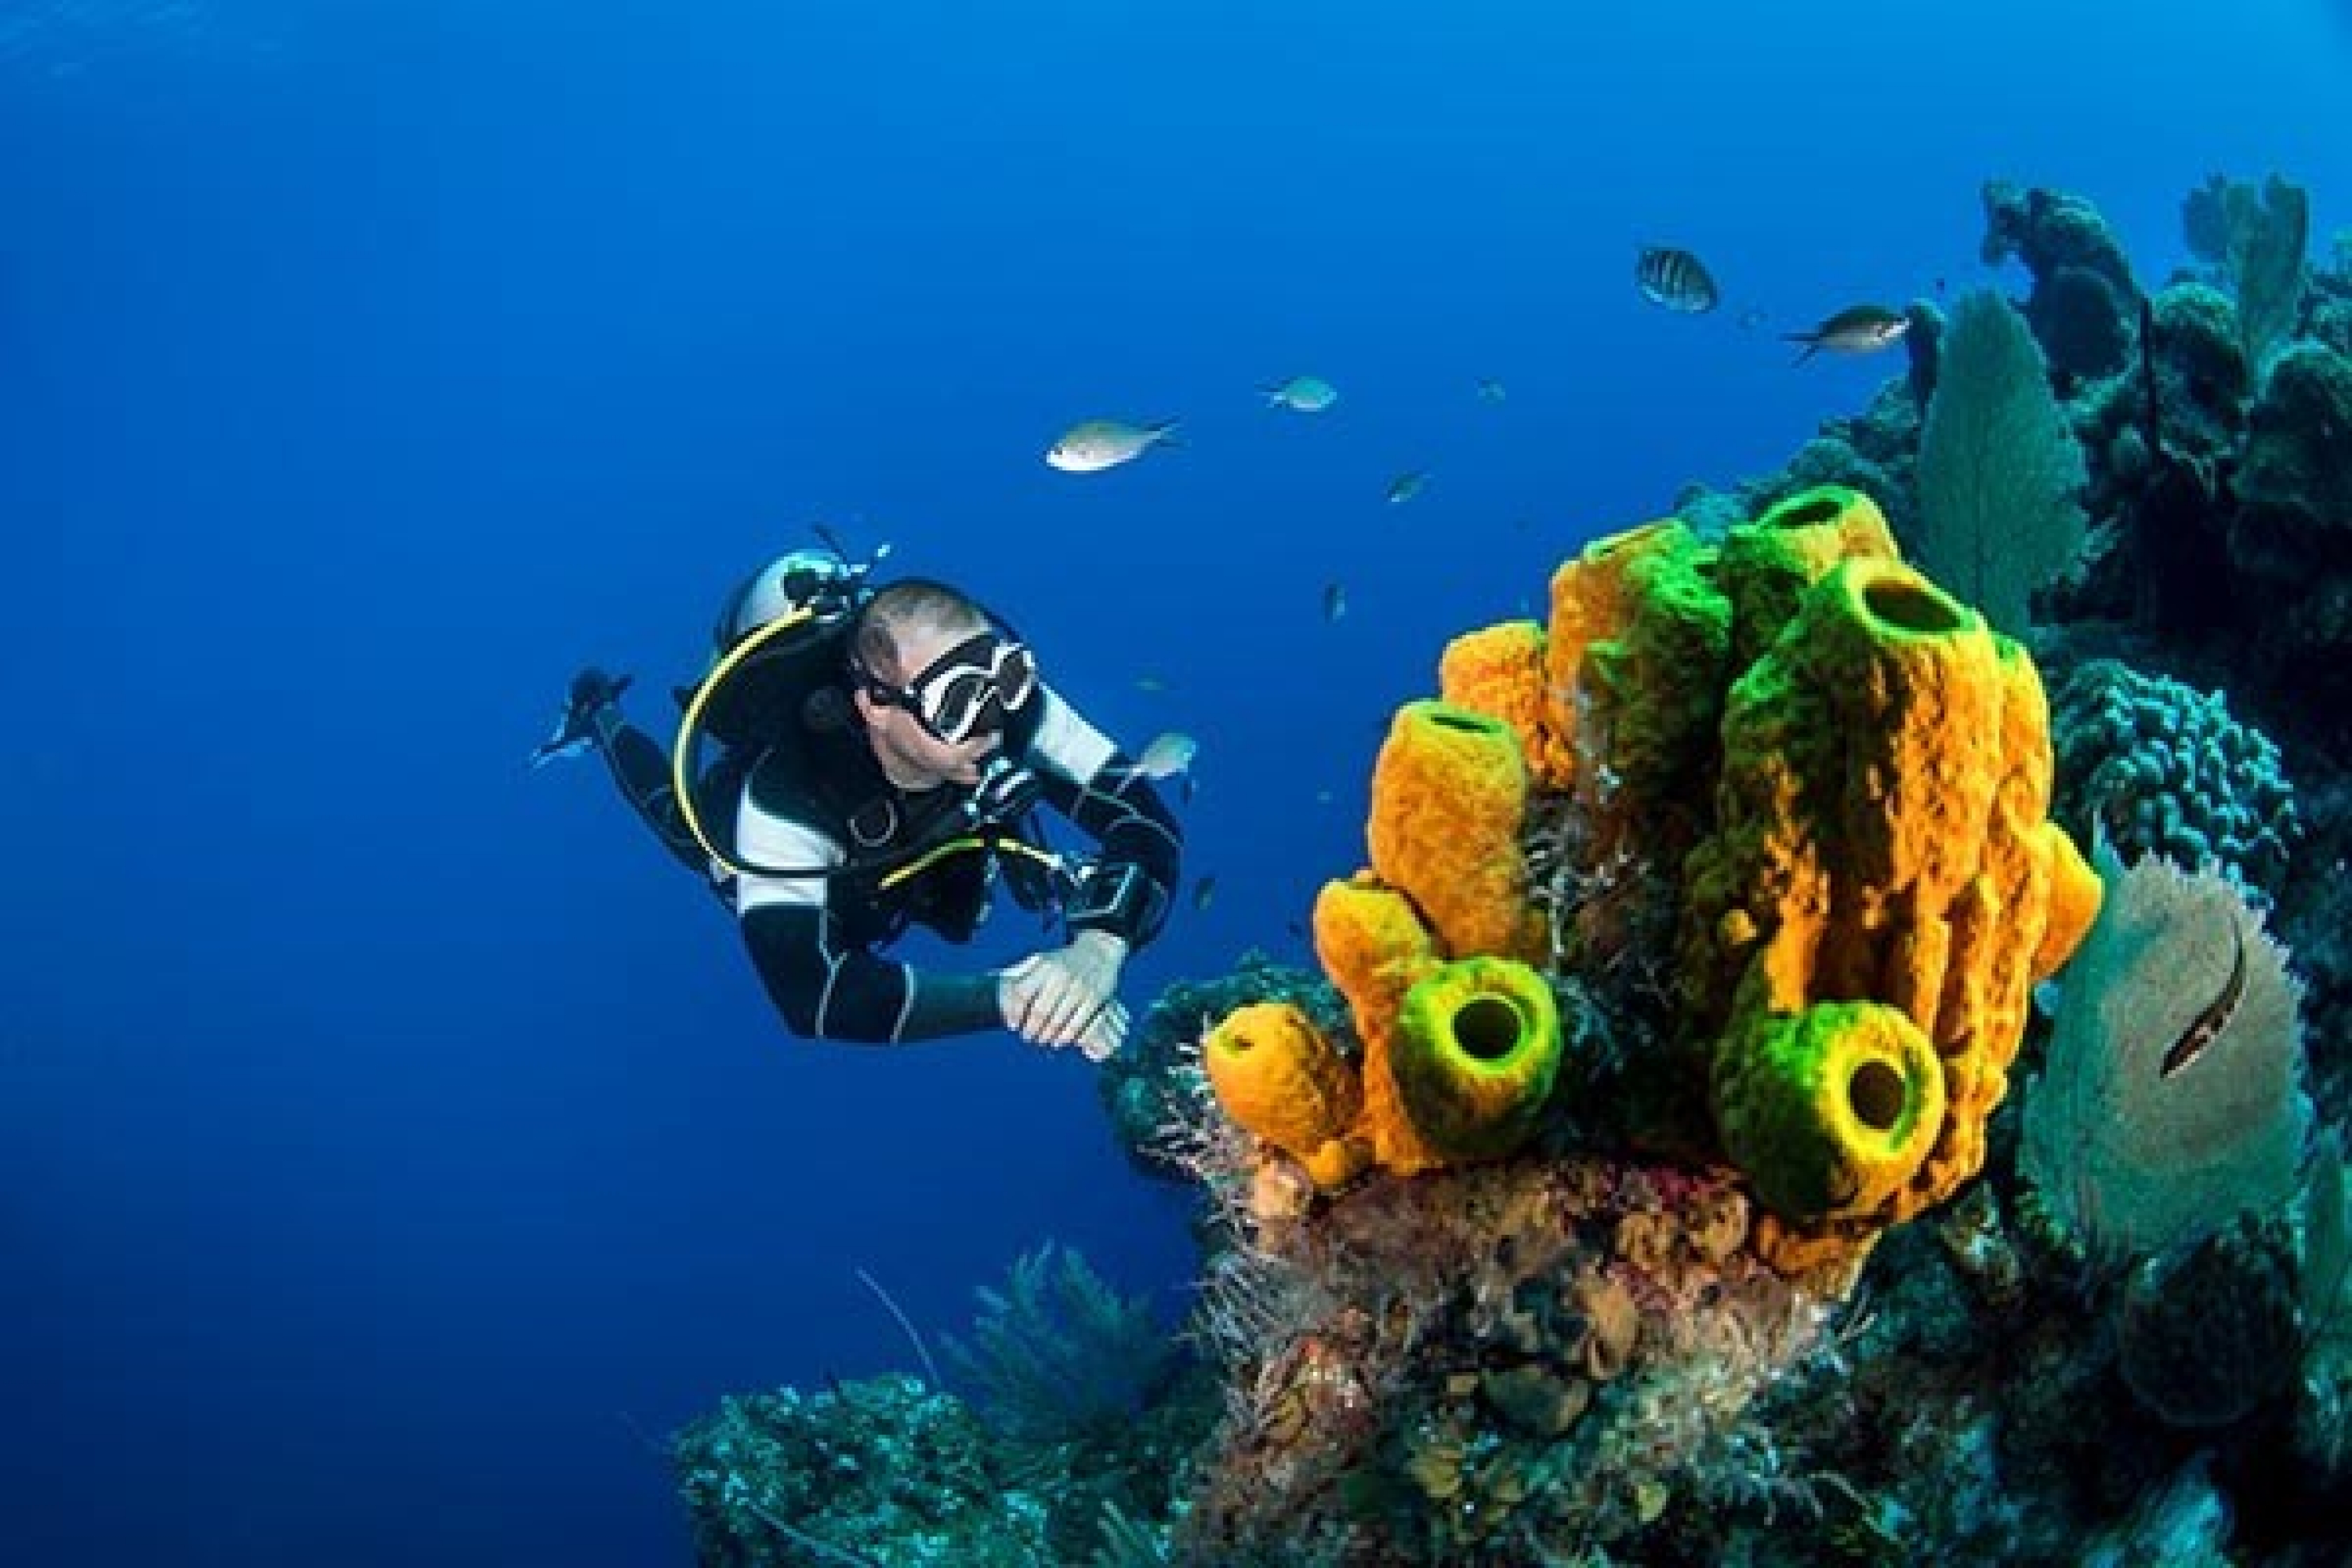 Un subacqueo ammira una barriera corallina. A partire da quando si parla di atto temerario?